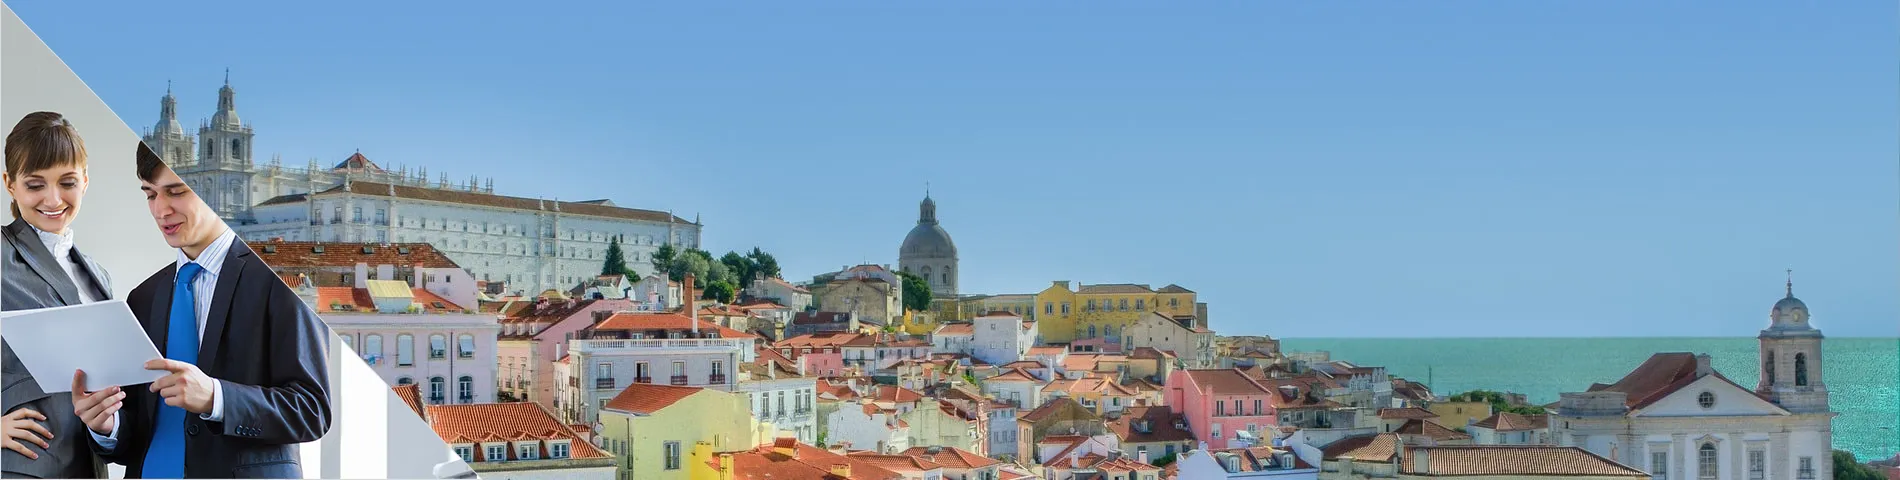 Lissabon - Business één-op-één